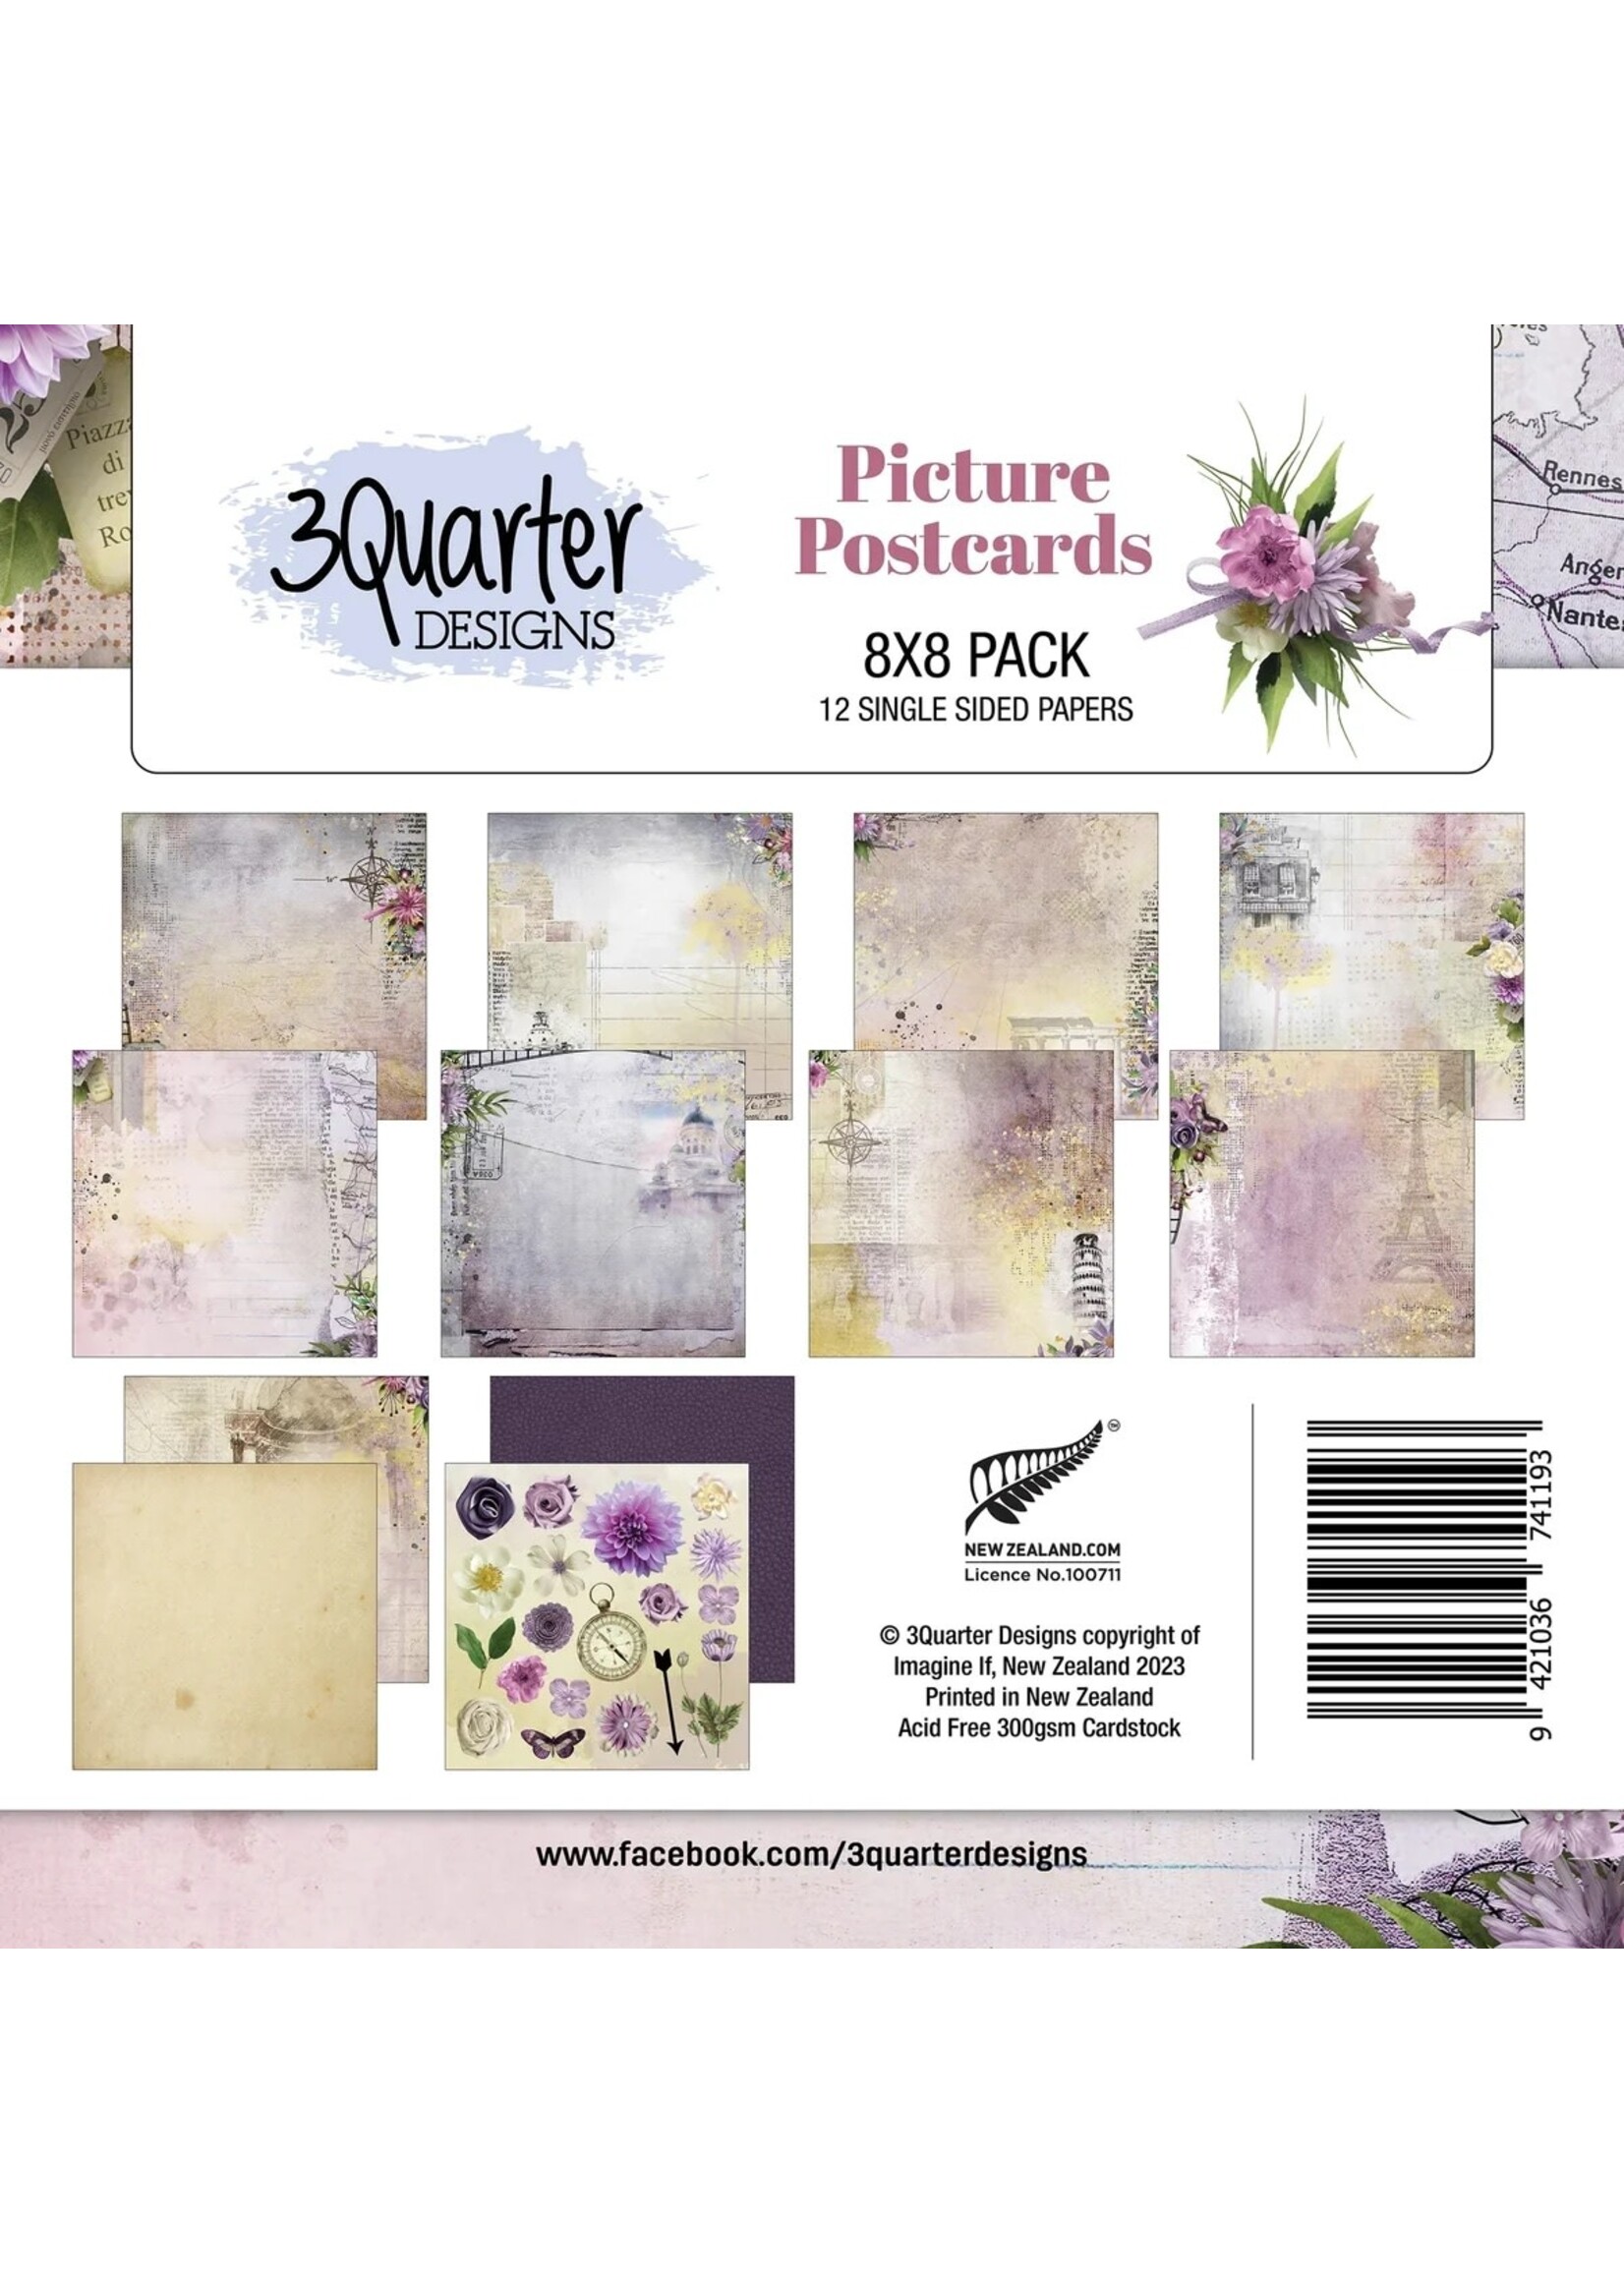 3Quarter Designs Picture Postcards 8x8 Paper Pad